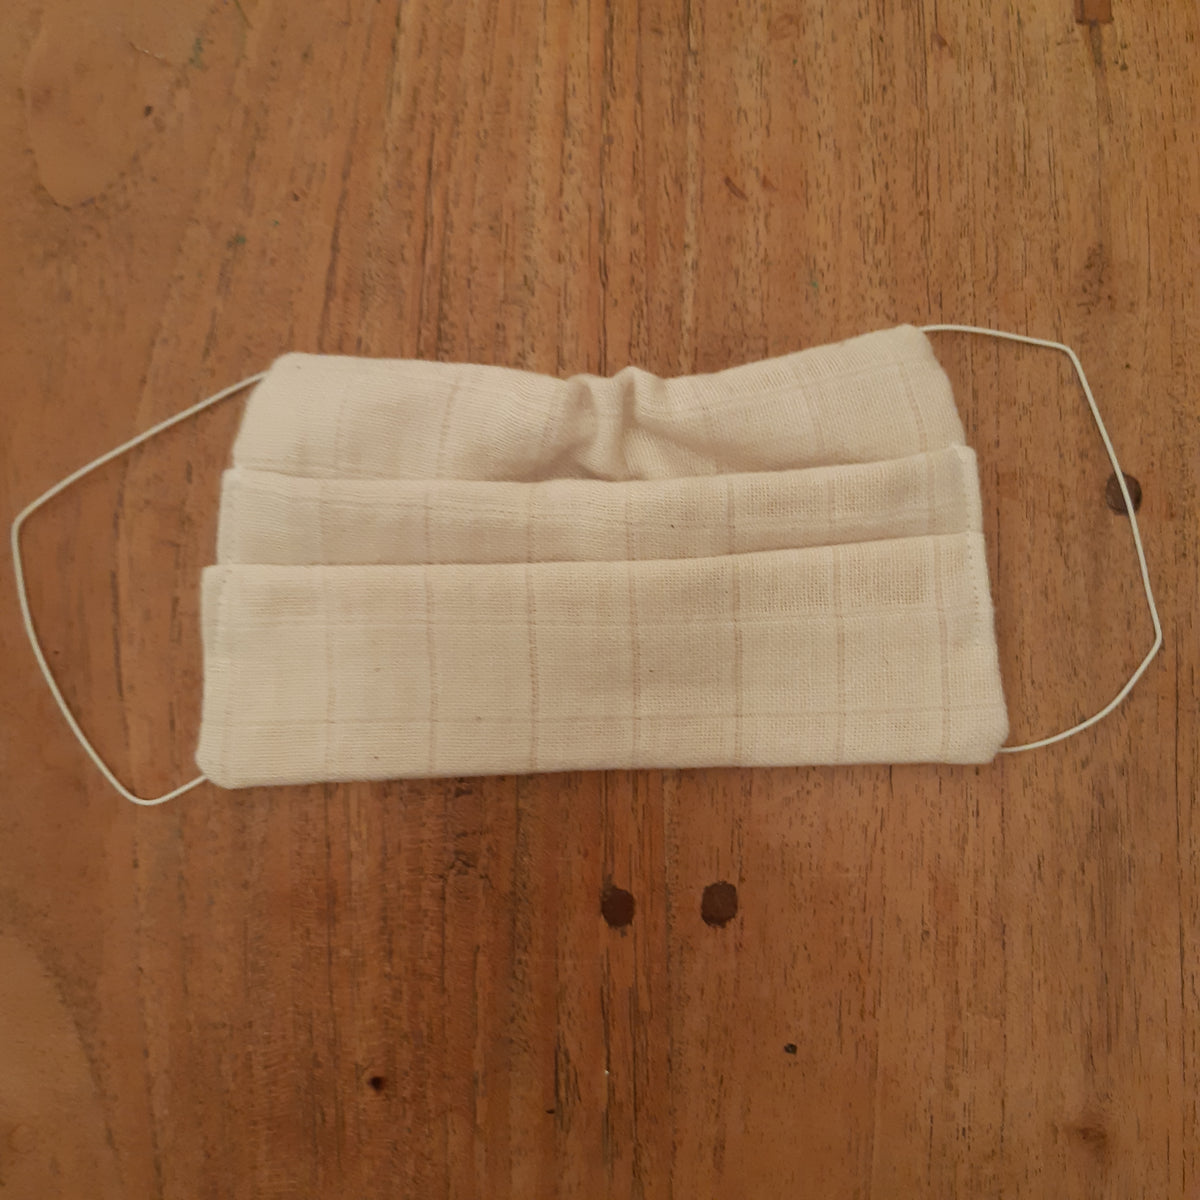 masque protection coton elastique 2 plis face visage coton biologique double gazefabrication artisanale france 